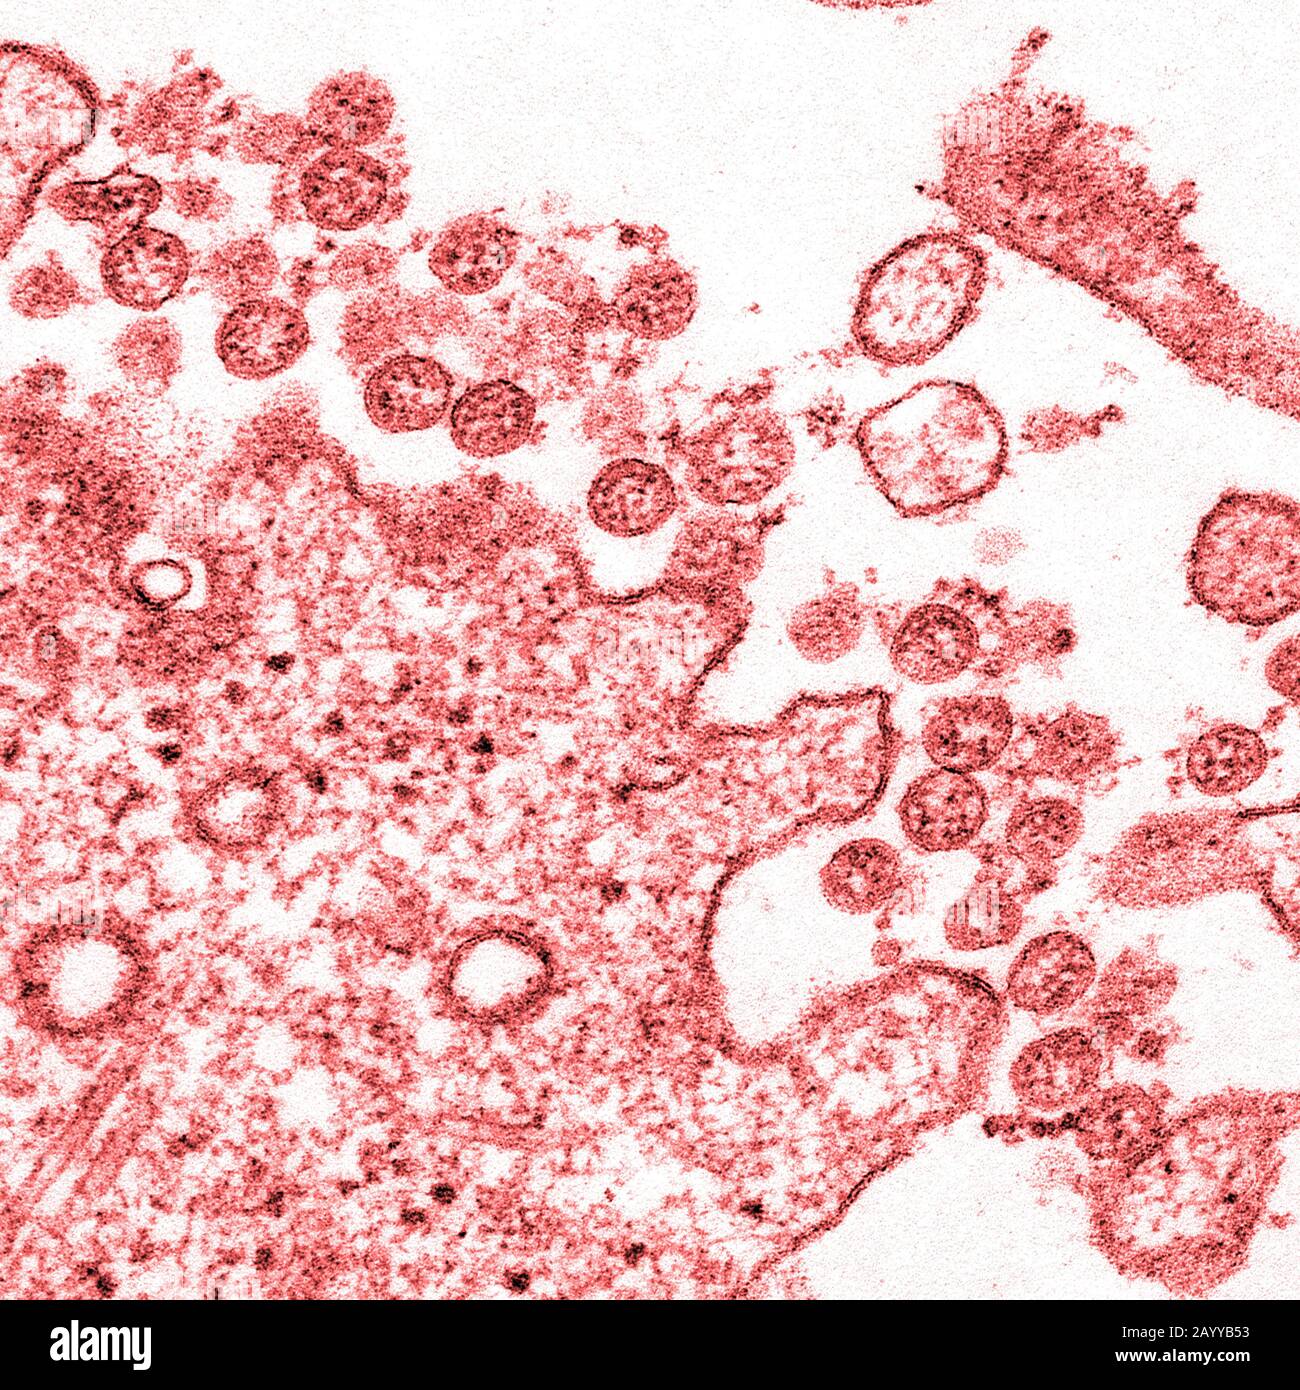 Transmissionselektronenmikroskopisches Bild eines Isolats vom ersten US-Fall von COVID-19, früher bekannt als 2019-nCoV. Die kugelförmigen extrazellulären Viruspartikel enthalten Querschnitte durch das virale Genom, die als rote Punkte angesehen werden. Stockfoto